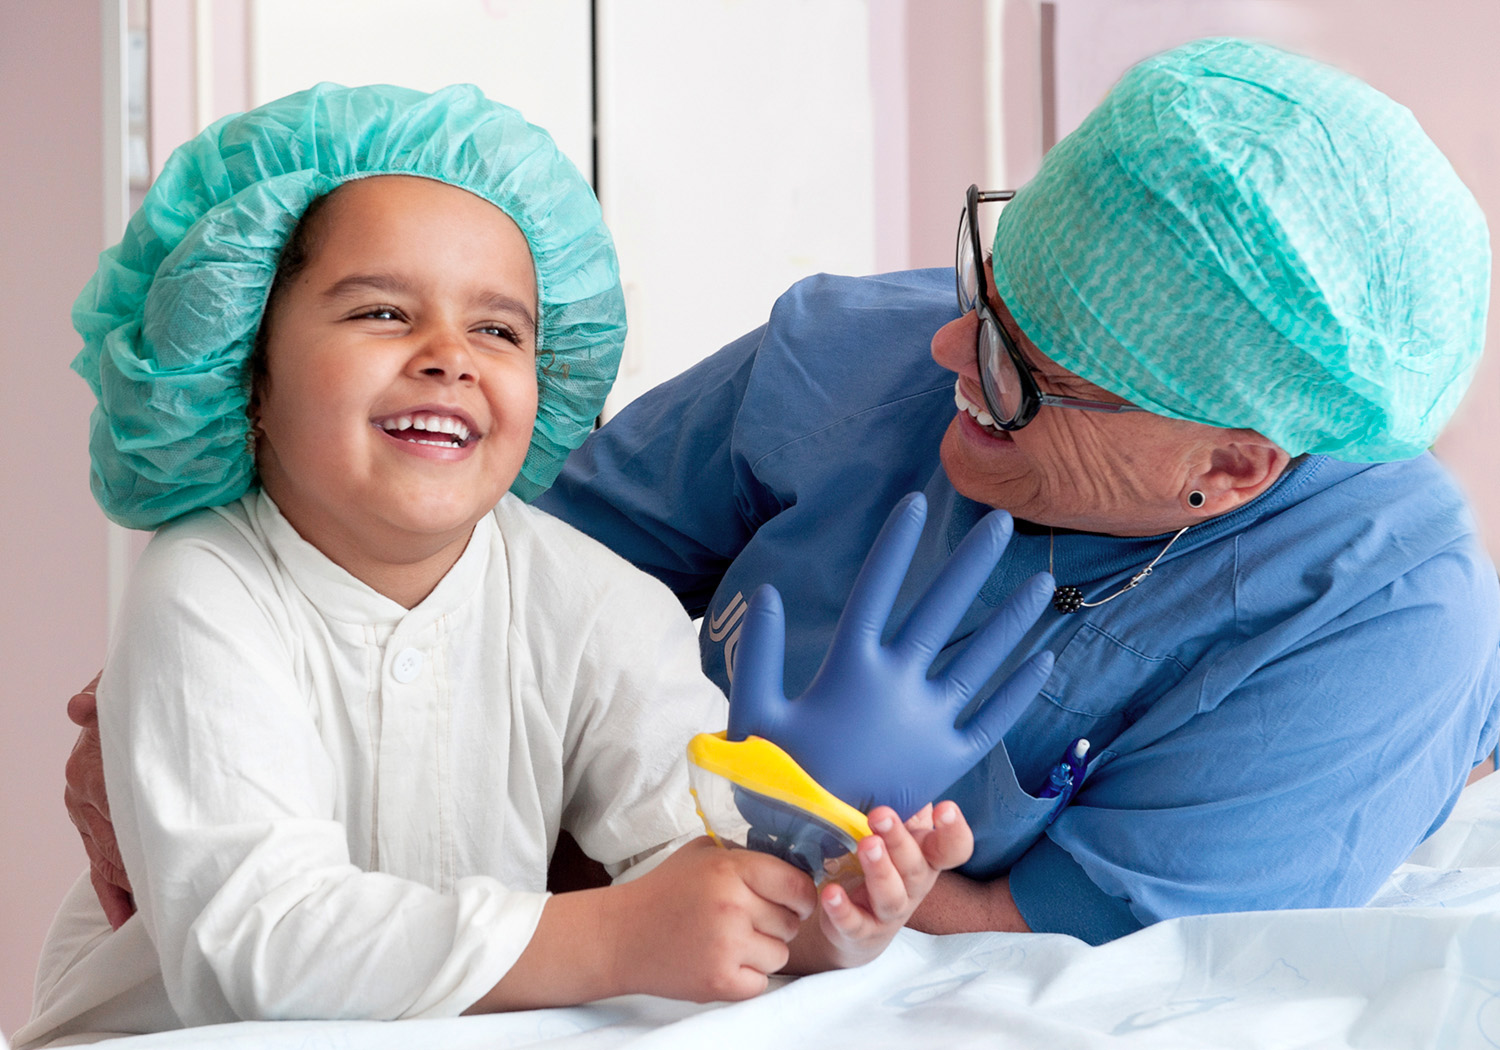 En vårdklädd kvinna lutar sig in bredvid ett skrattande barn klädd i sjukhuskläder och operationshuva.